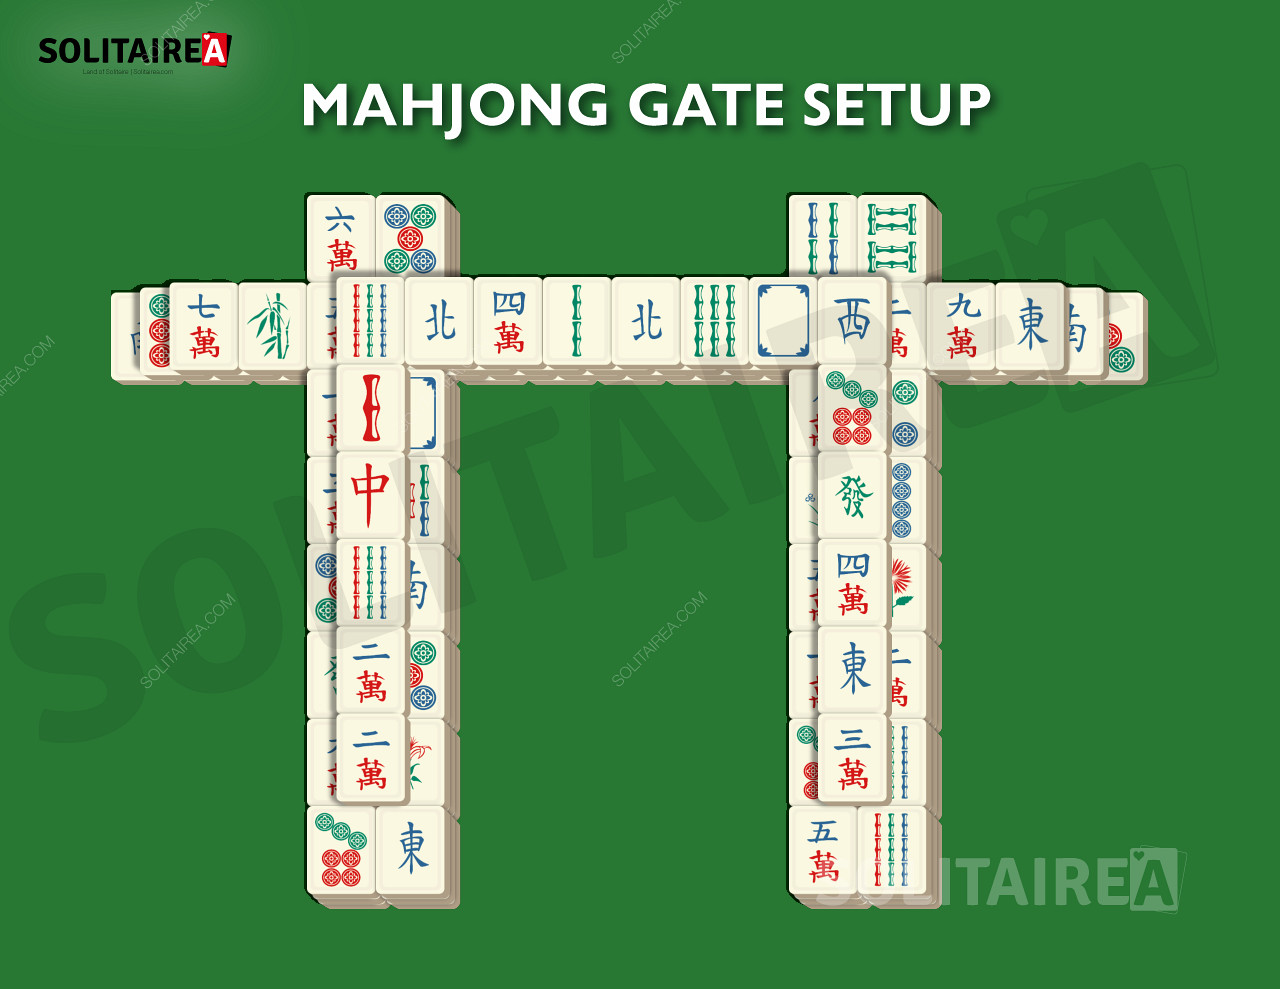 إعداد واستراتيجية بوابة Mahjong